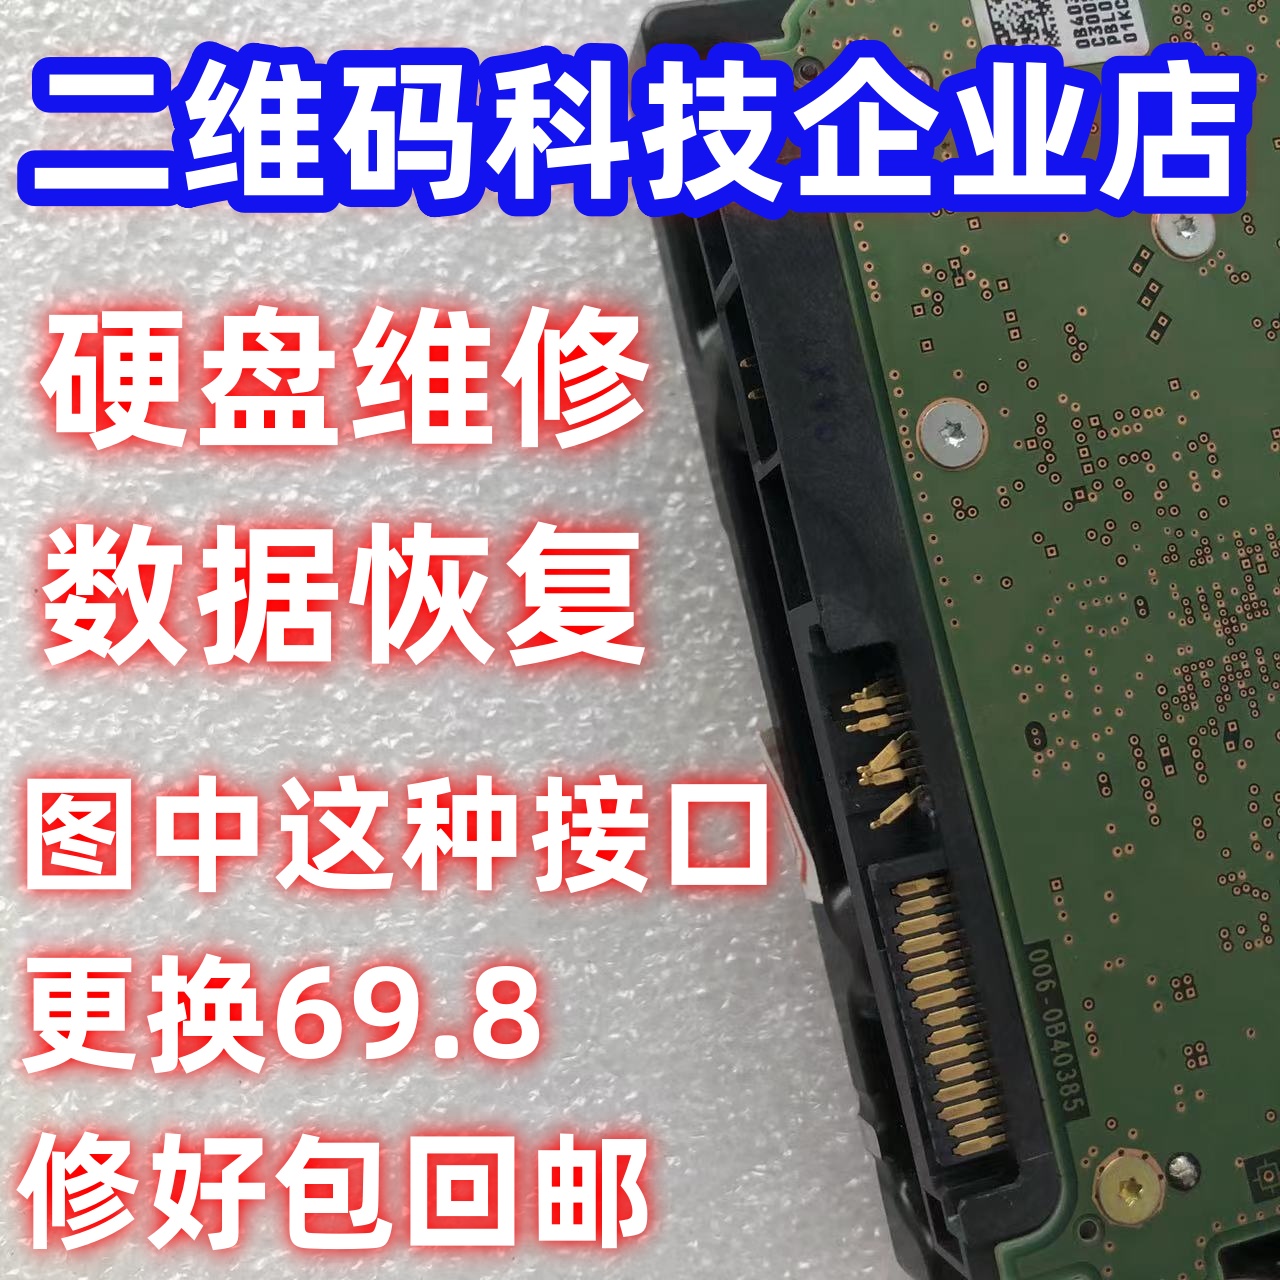 8T10T14T16T西数机械硬盘接口维修SATA接口维修硬盘维修数据恢复